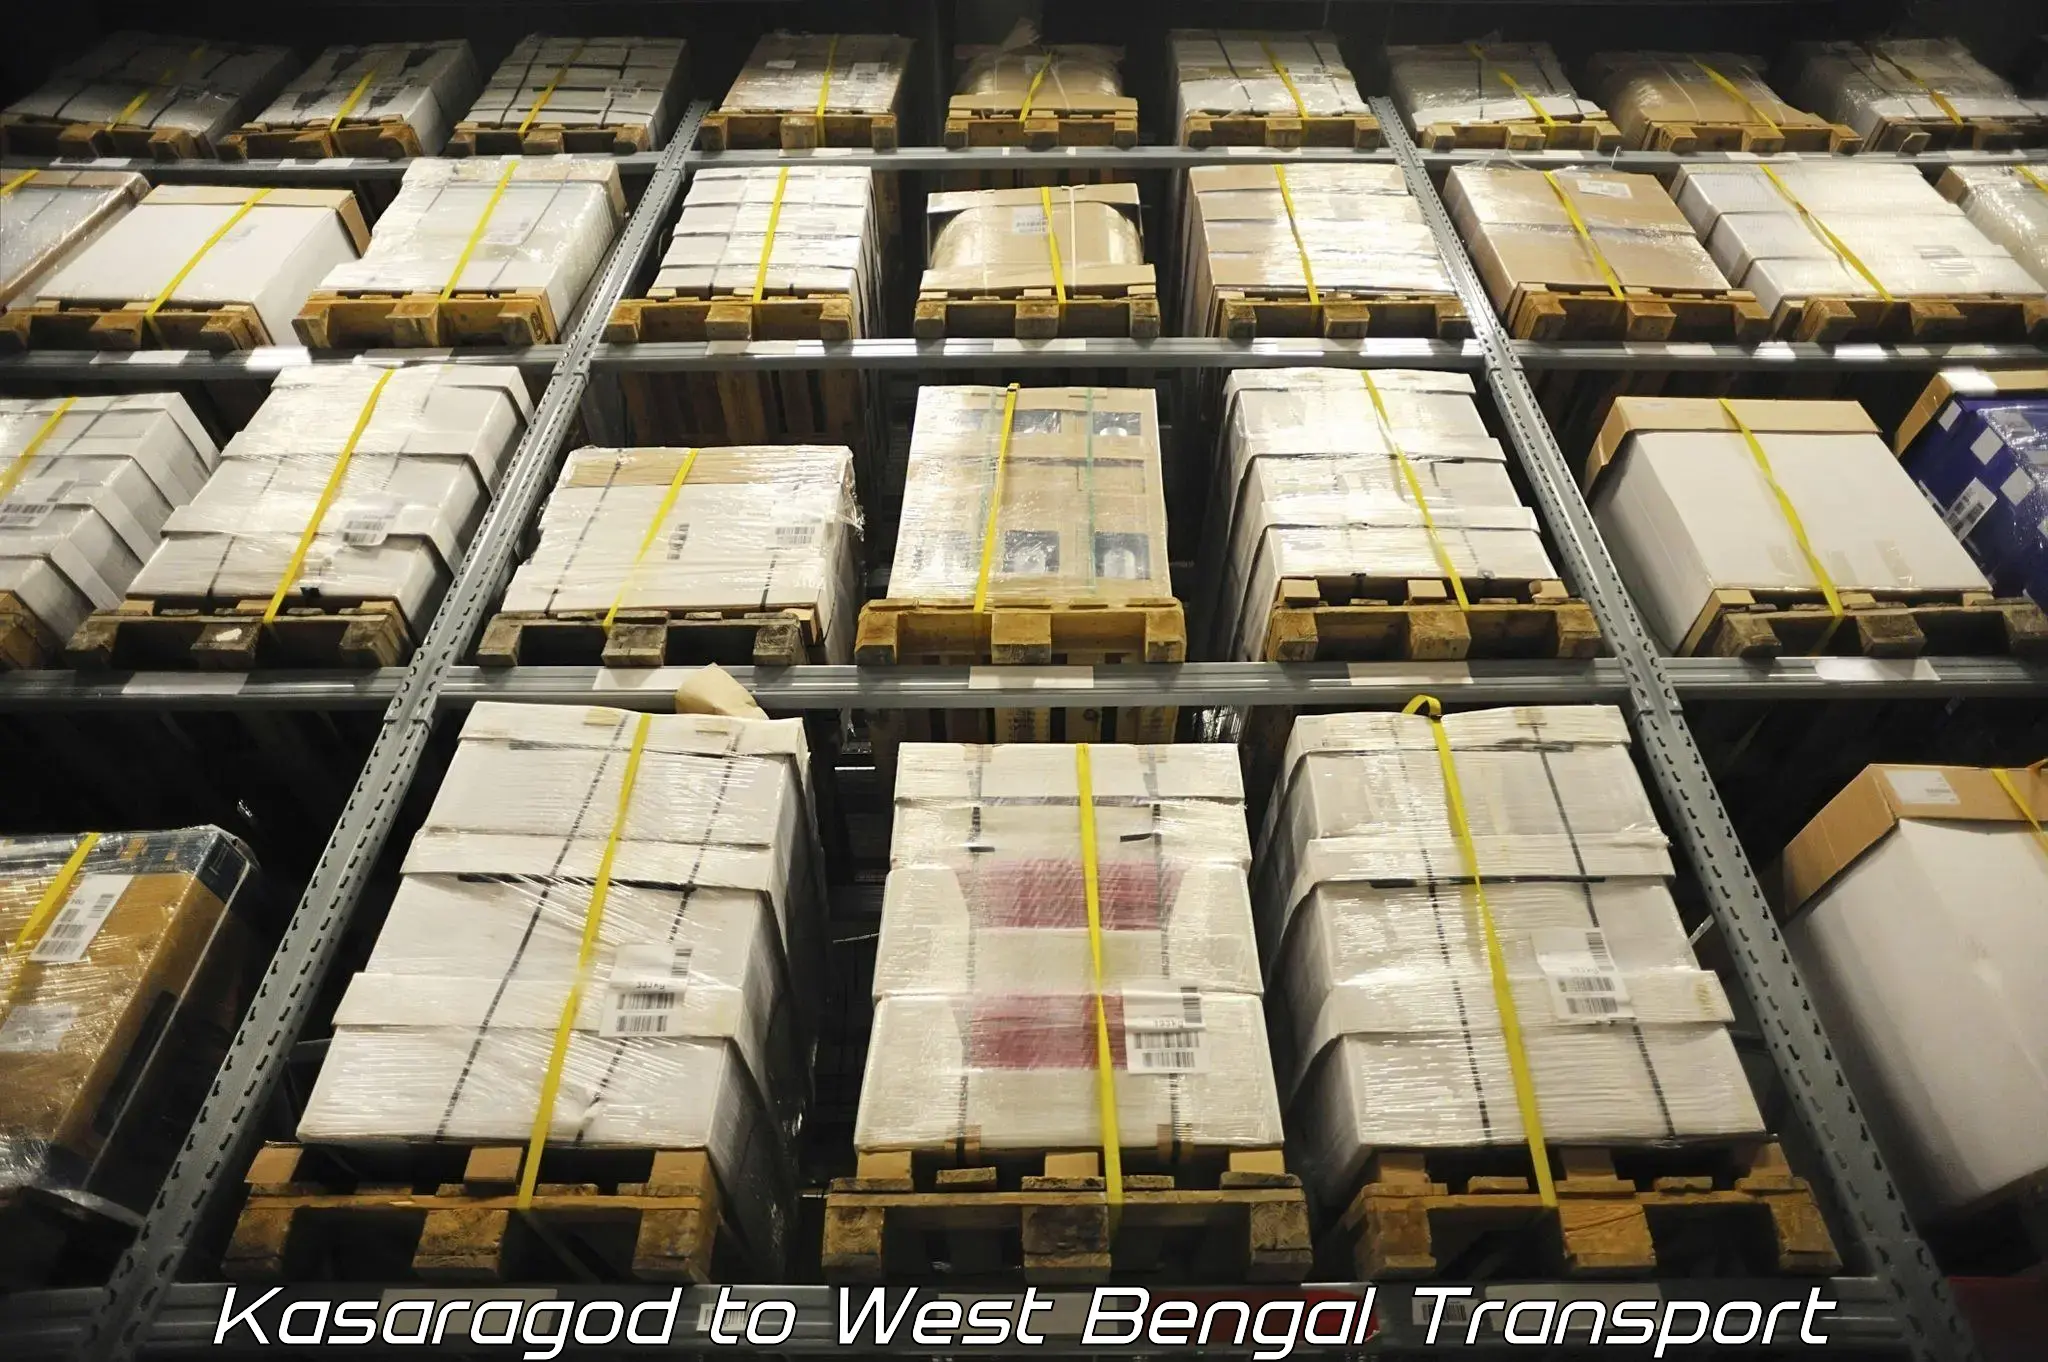 Pick up transport service Kasaragod to West Bengal